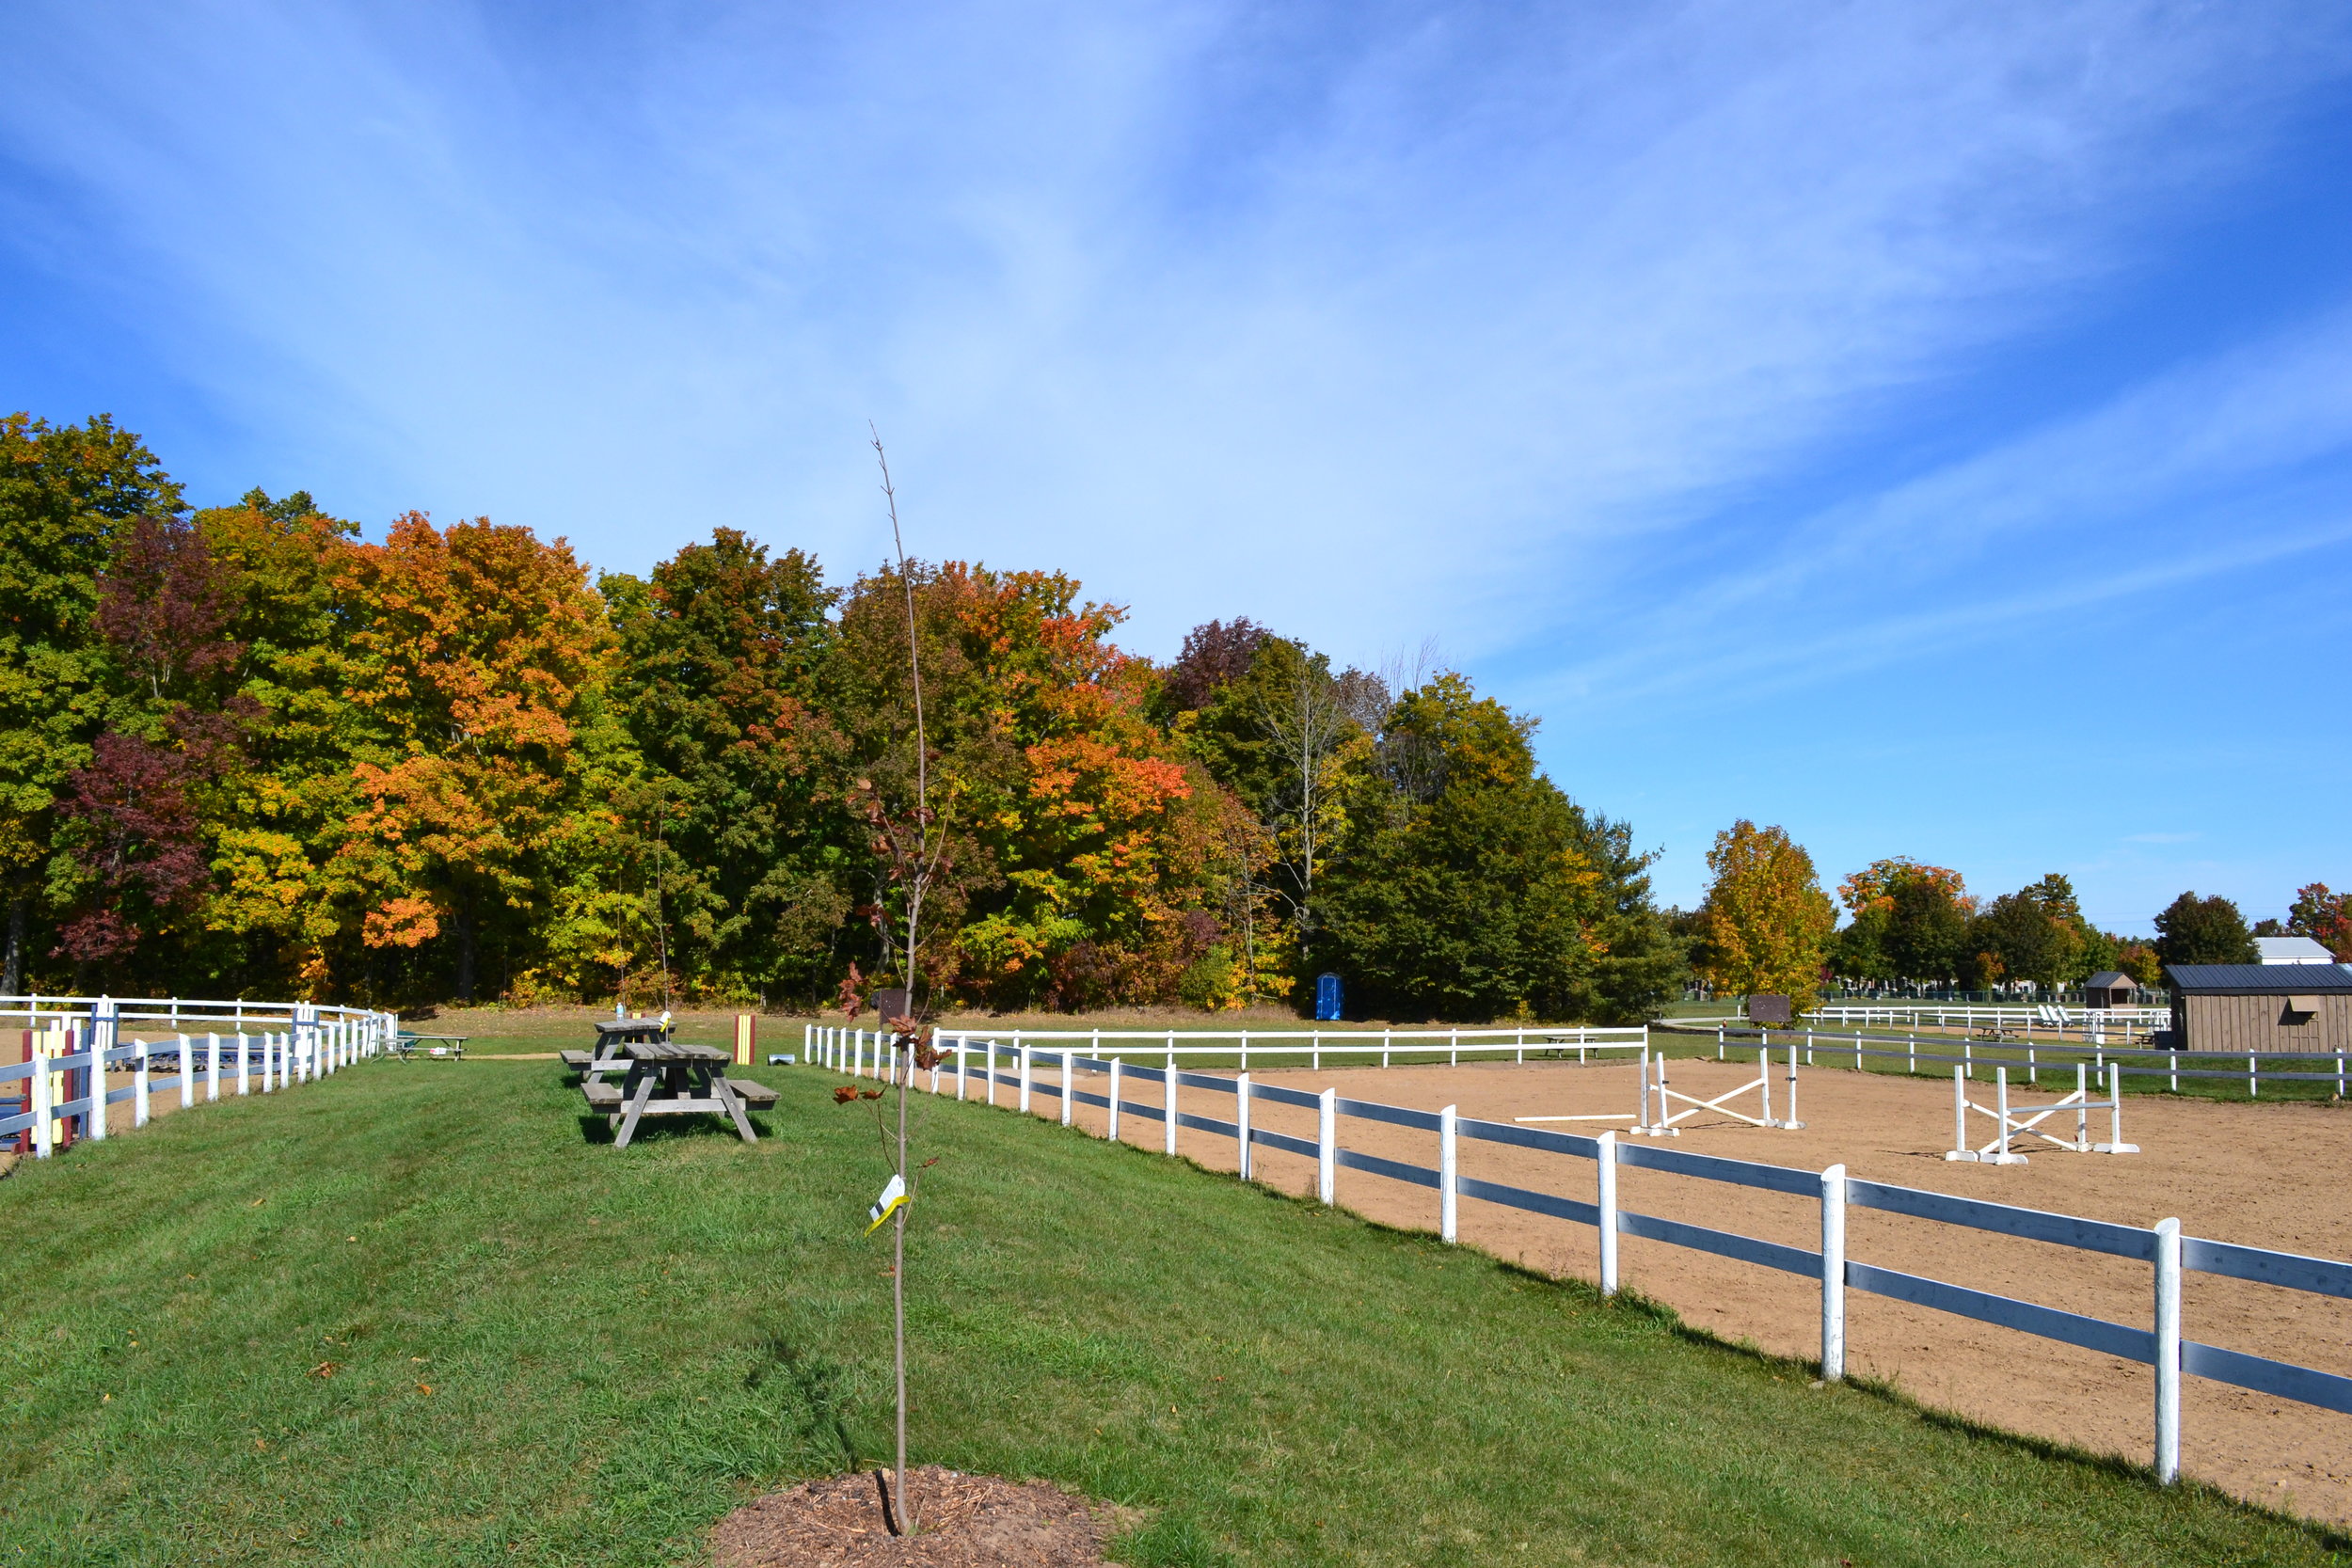  Edenview Equestrian Center Fall 2015 